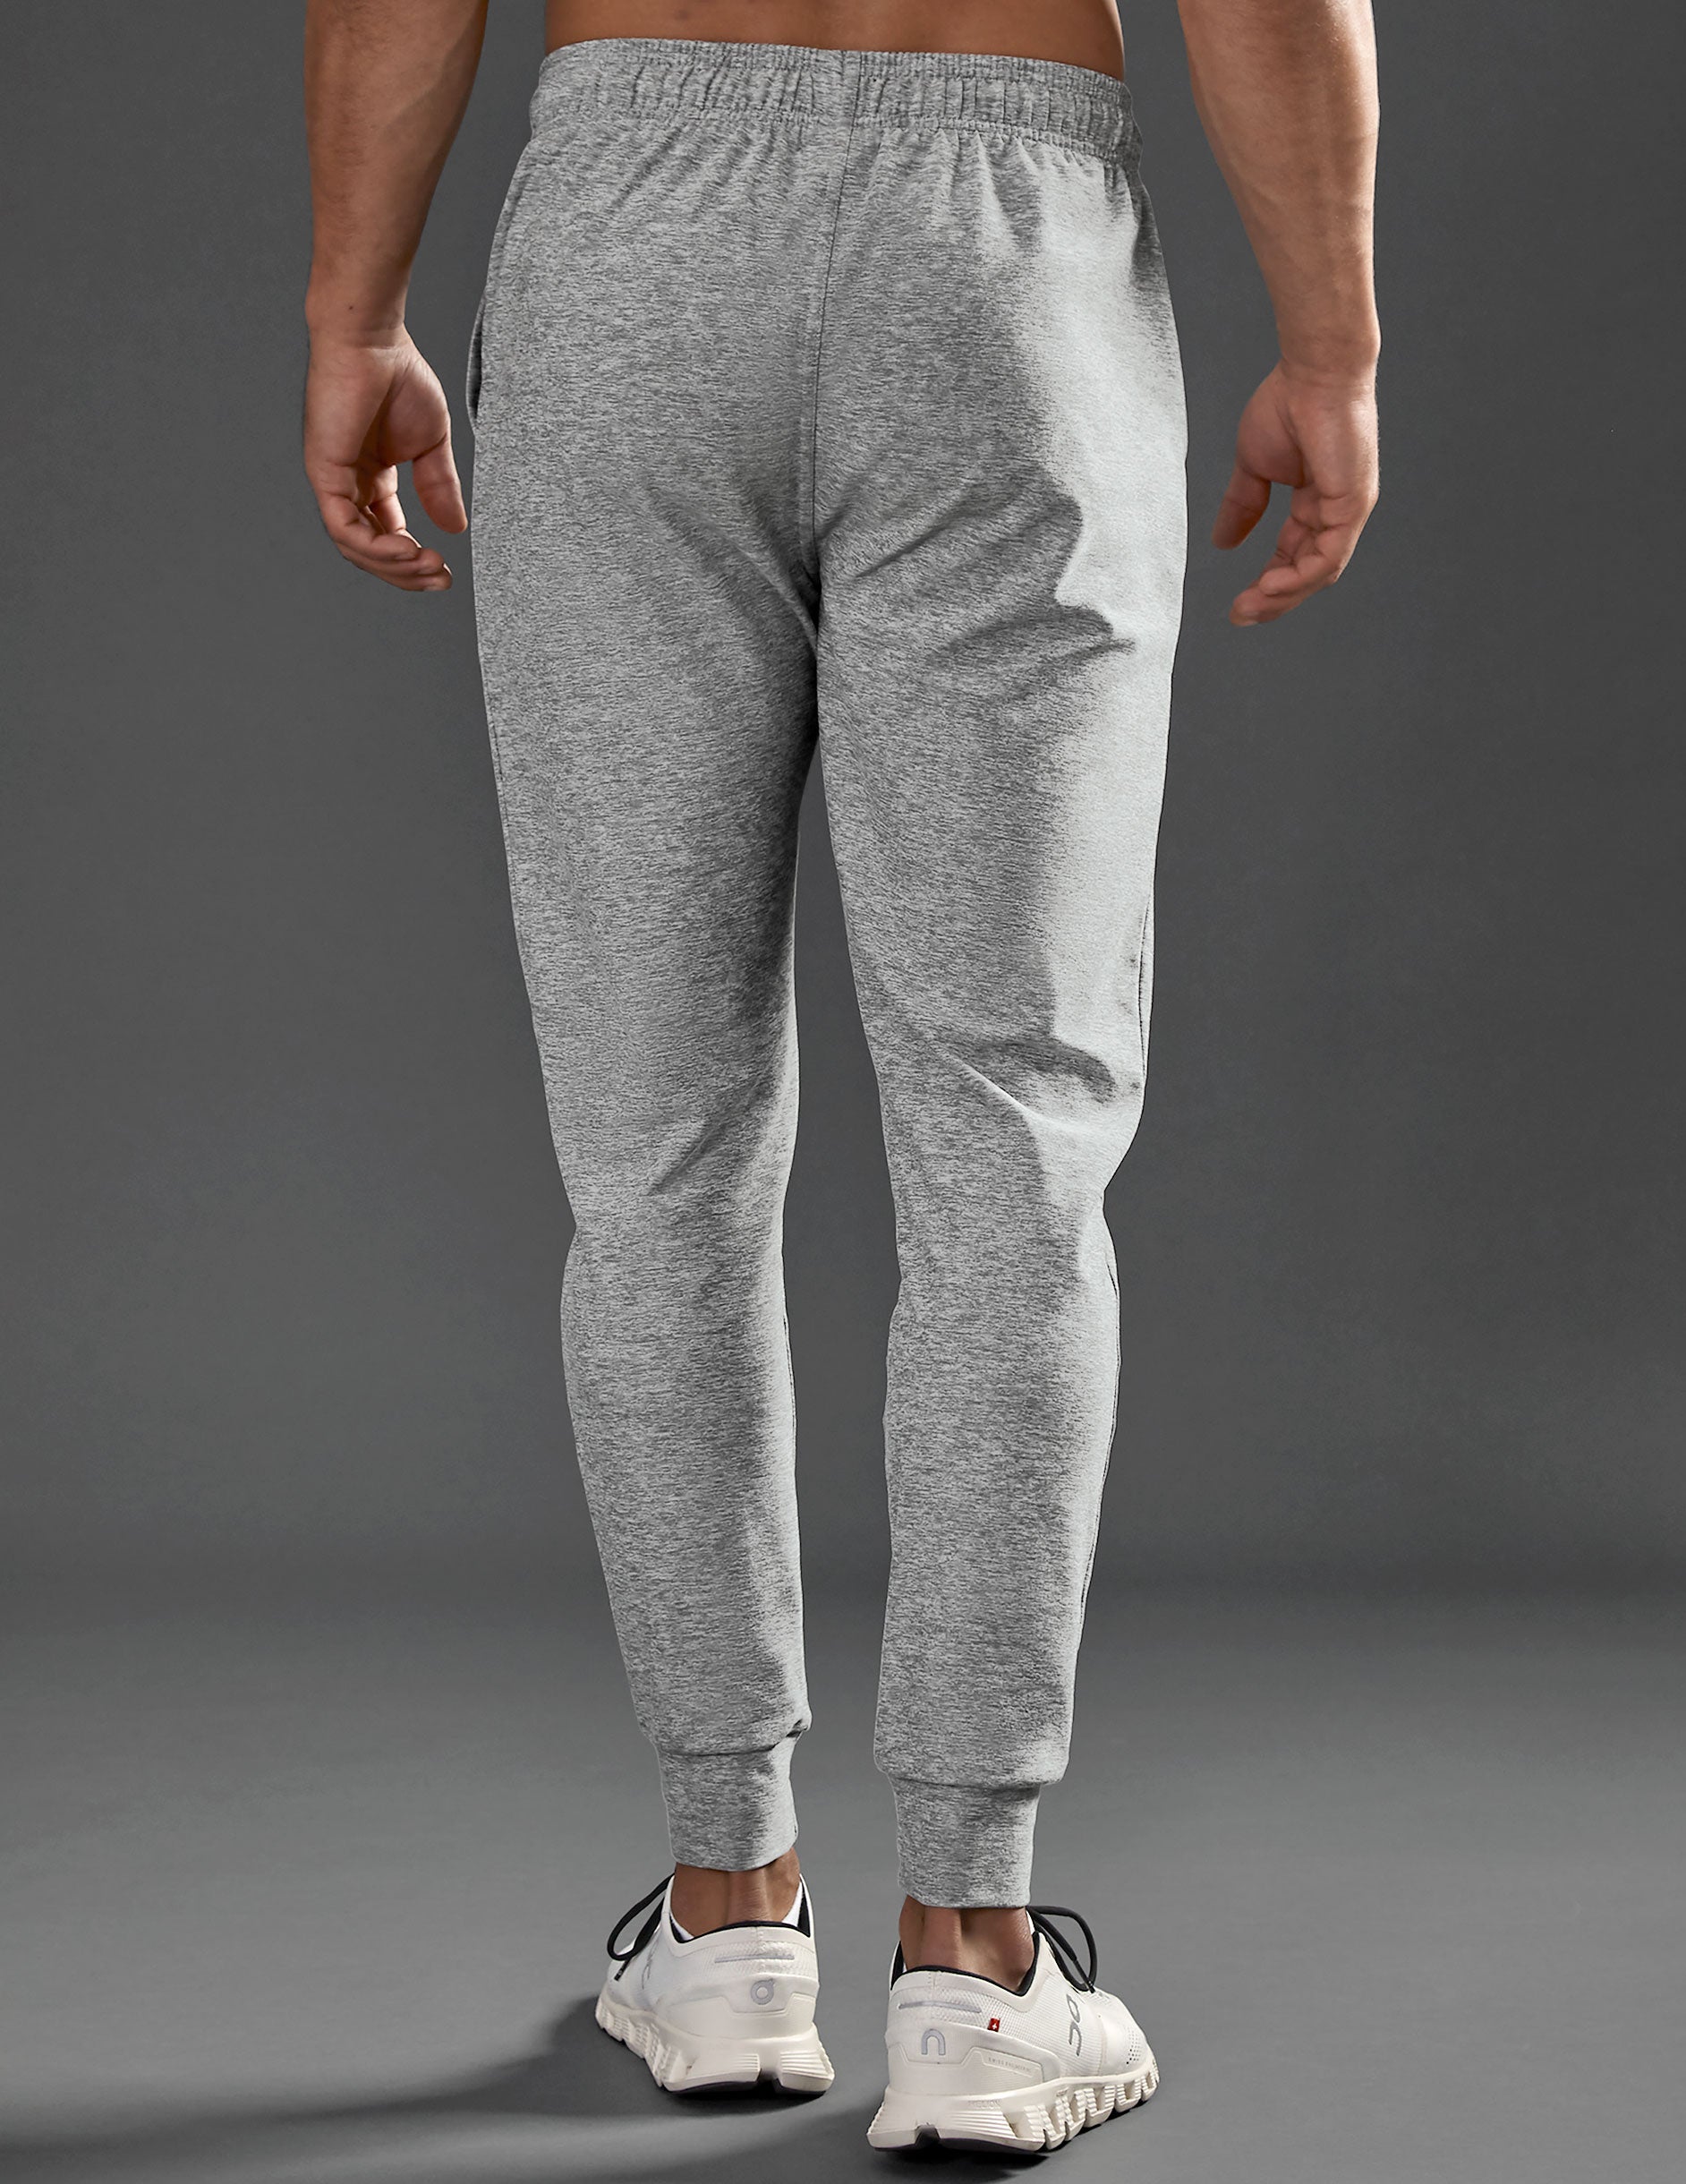 grey mens sweatpants with drawstring at waist